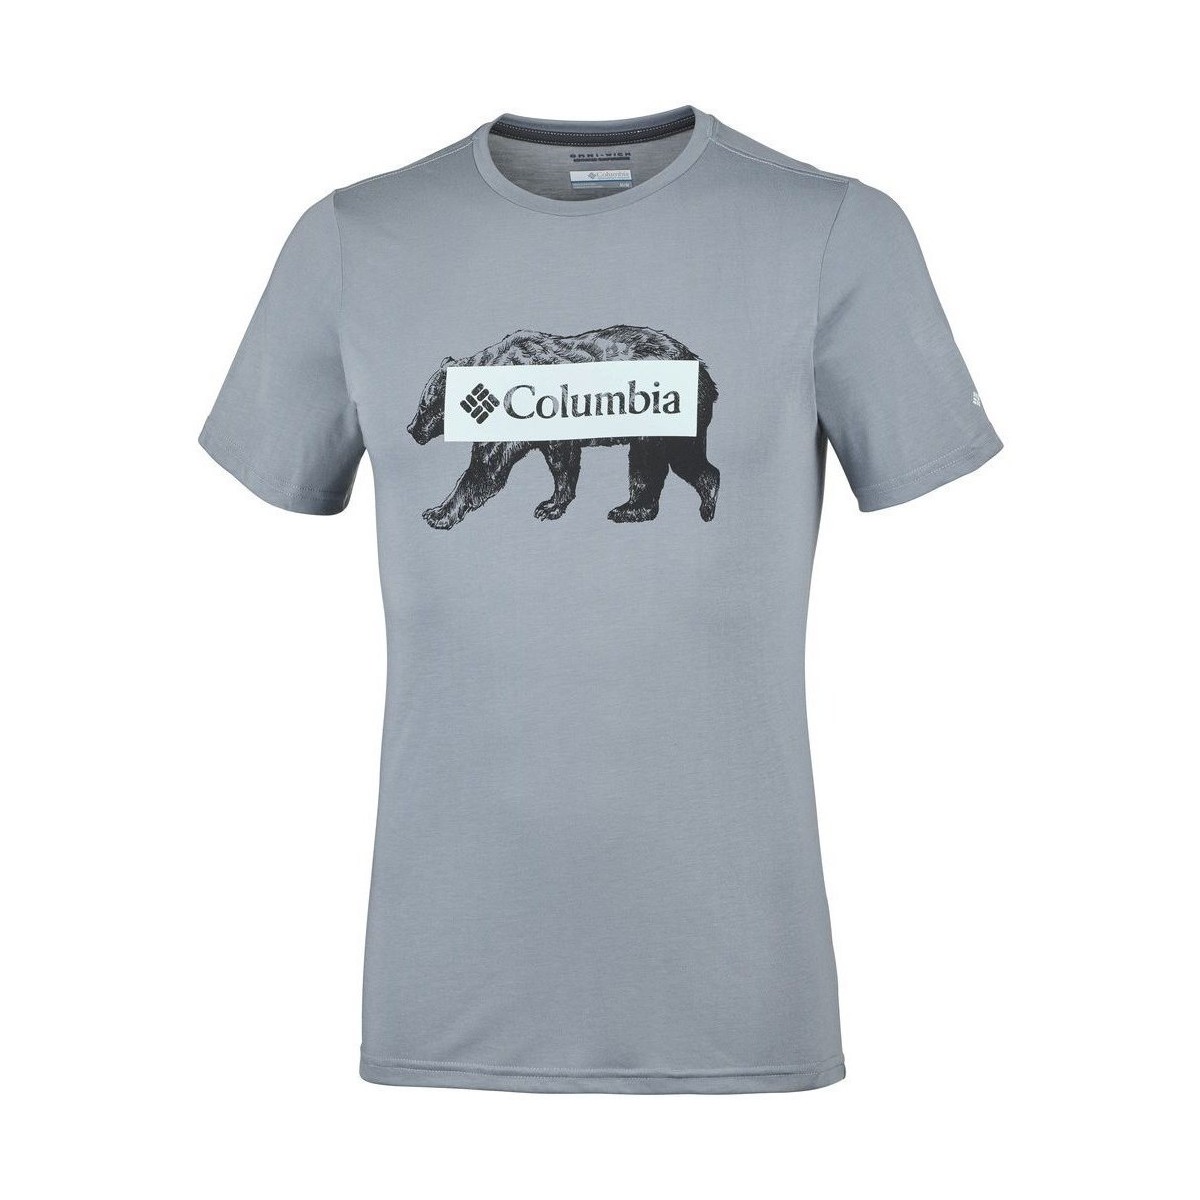 Vêtements Homme T-shirts manches courtes Columbia Box Logo Bear Gris